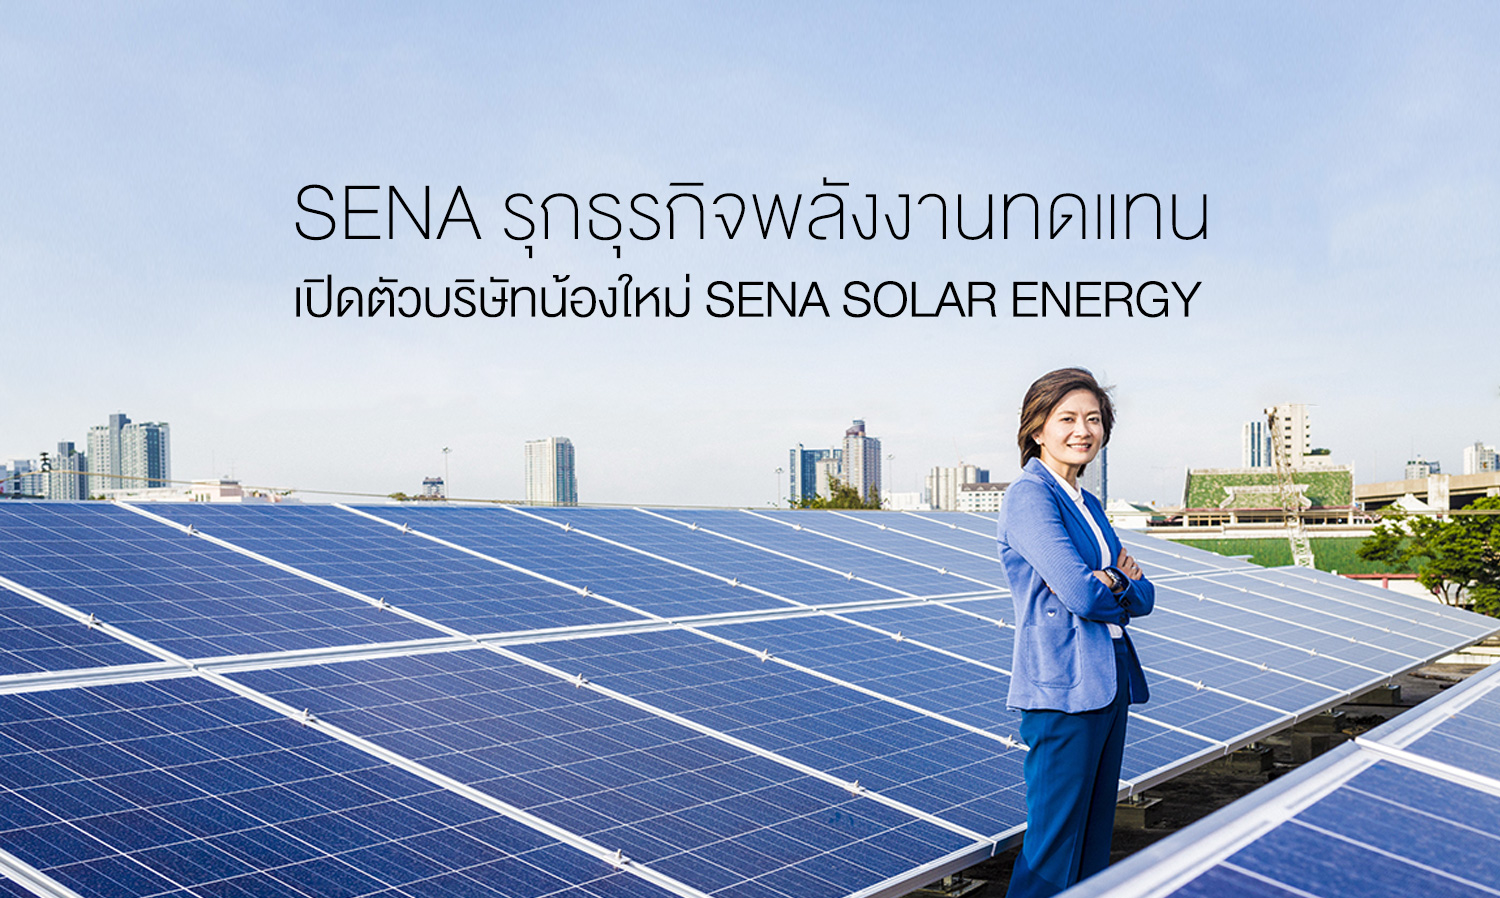 SENA รุกธุรกิจพลังงานทดแทน เปิดตัวบริษัทน้องใหม่ SENA SOLAR ENERGY